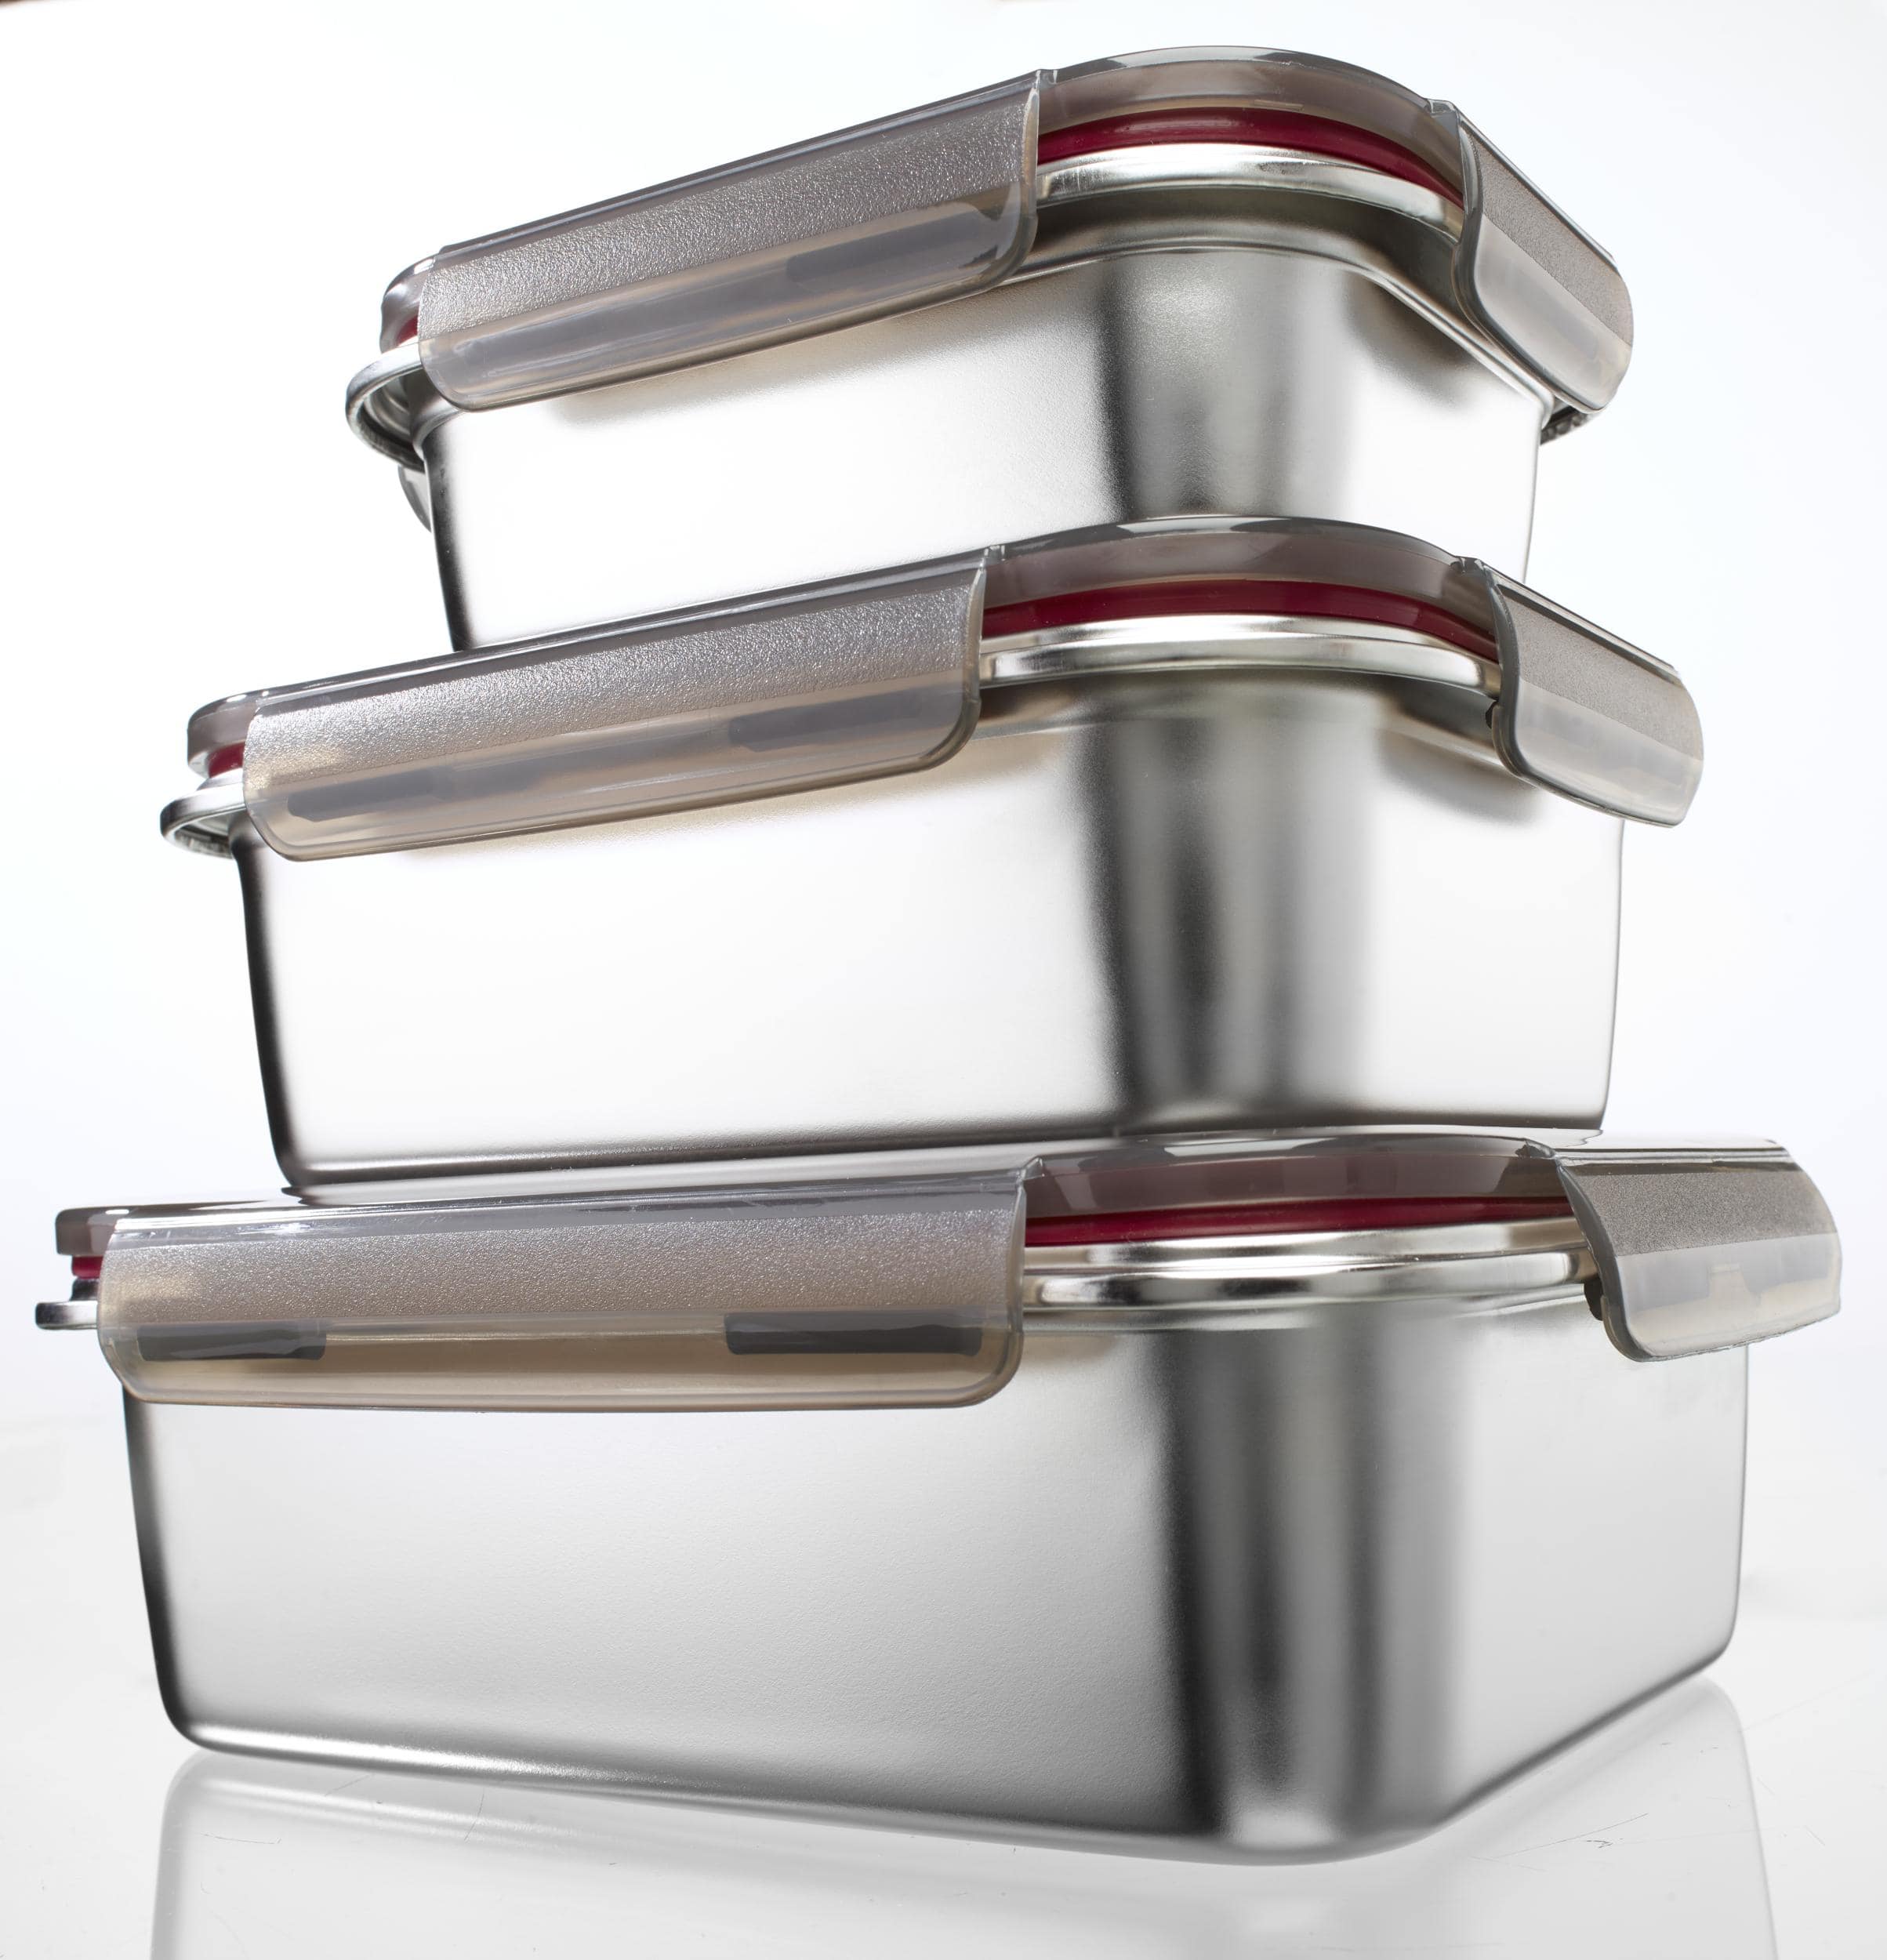 Steuber Frischhaltedosen XL Edelstahl mit Klick-Deckeln, 6-teilig